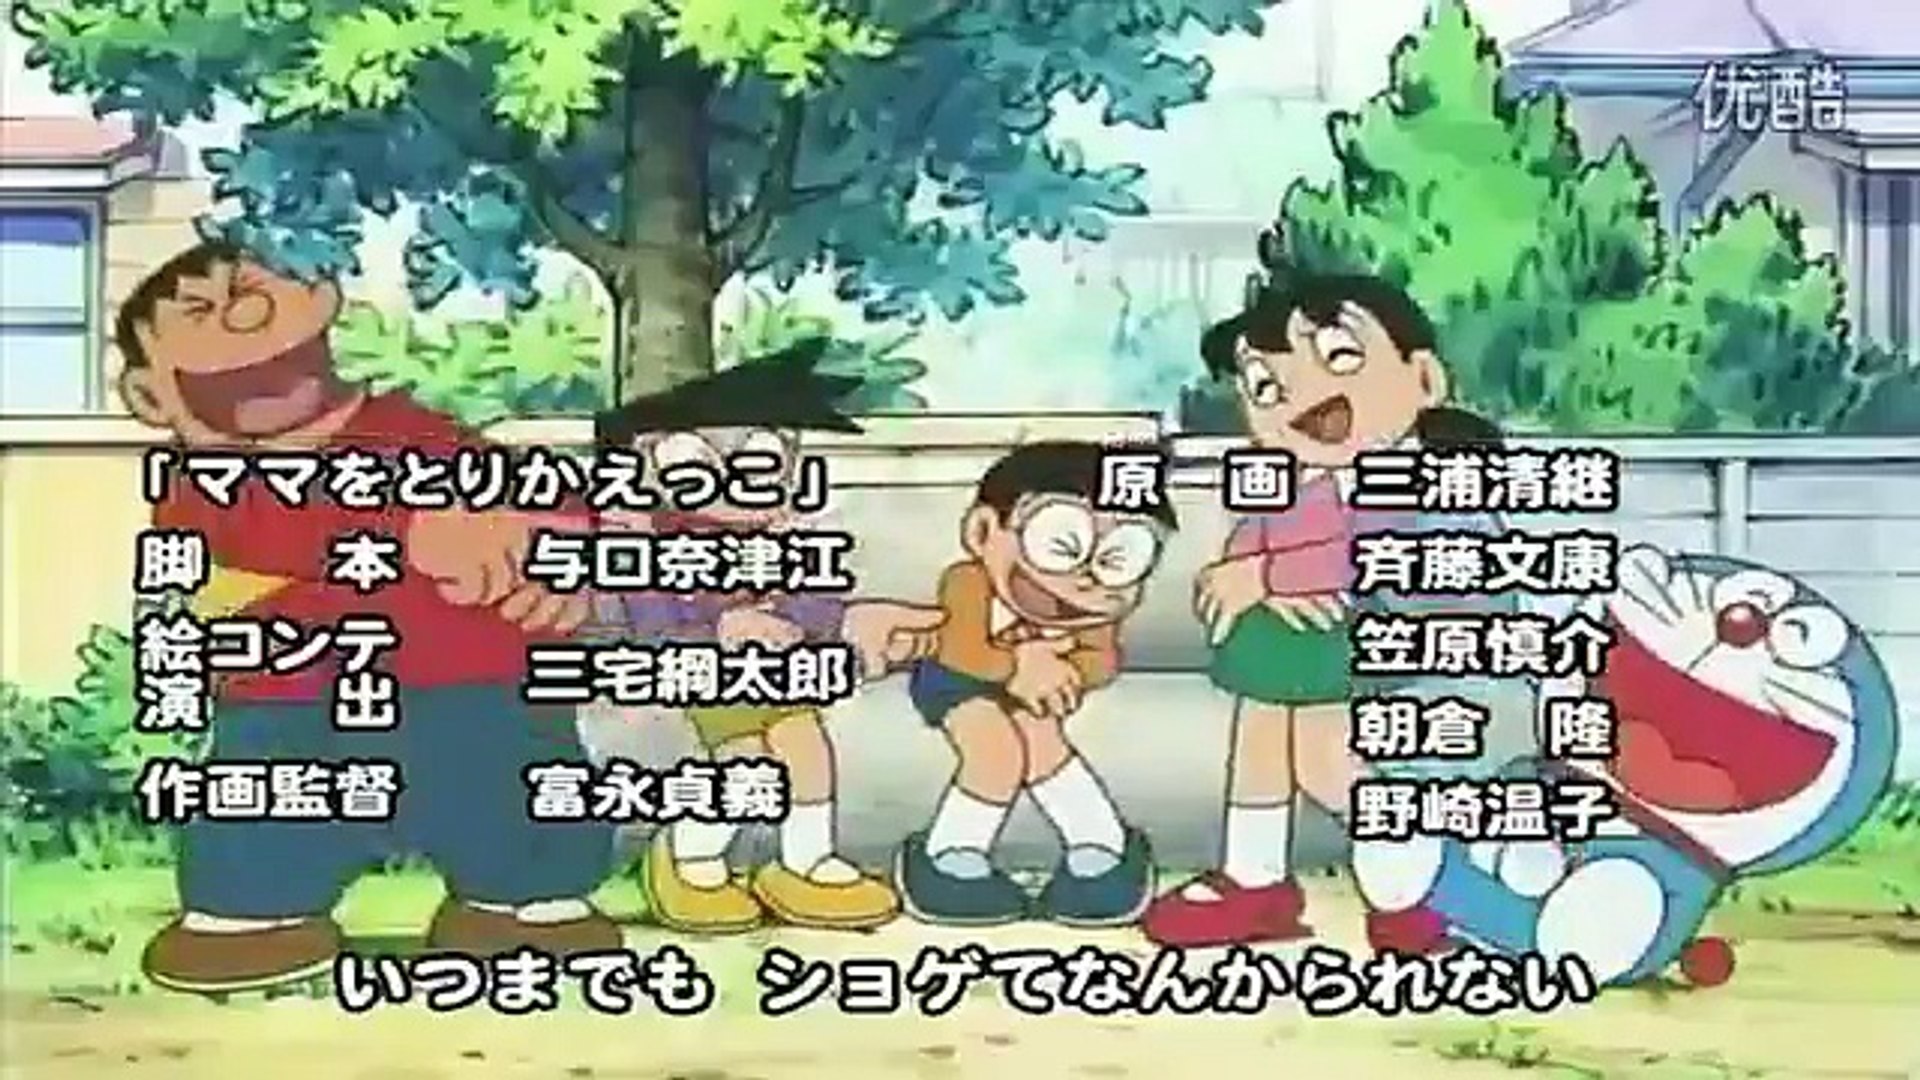 ハグしちゃお 05年op映像 Hugushichao Doraemon Japanese 動画 Dailymotion